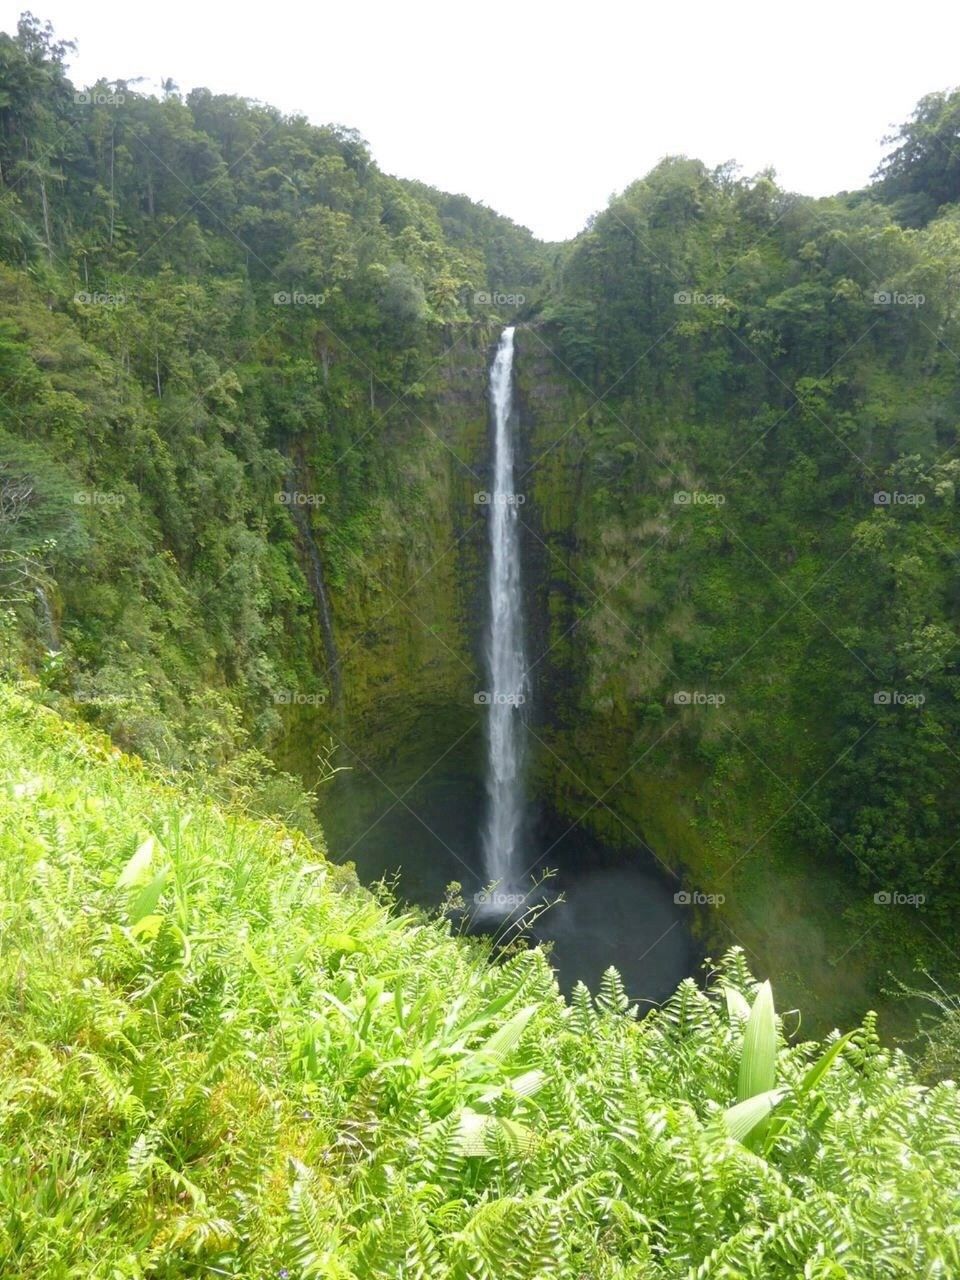 Akaka falls at Hawaii